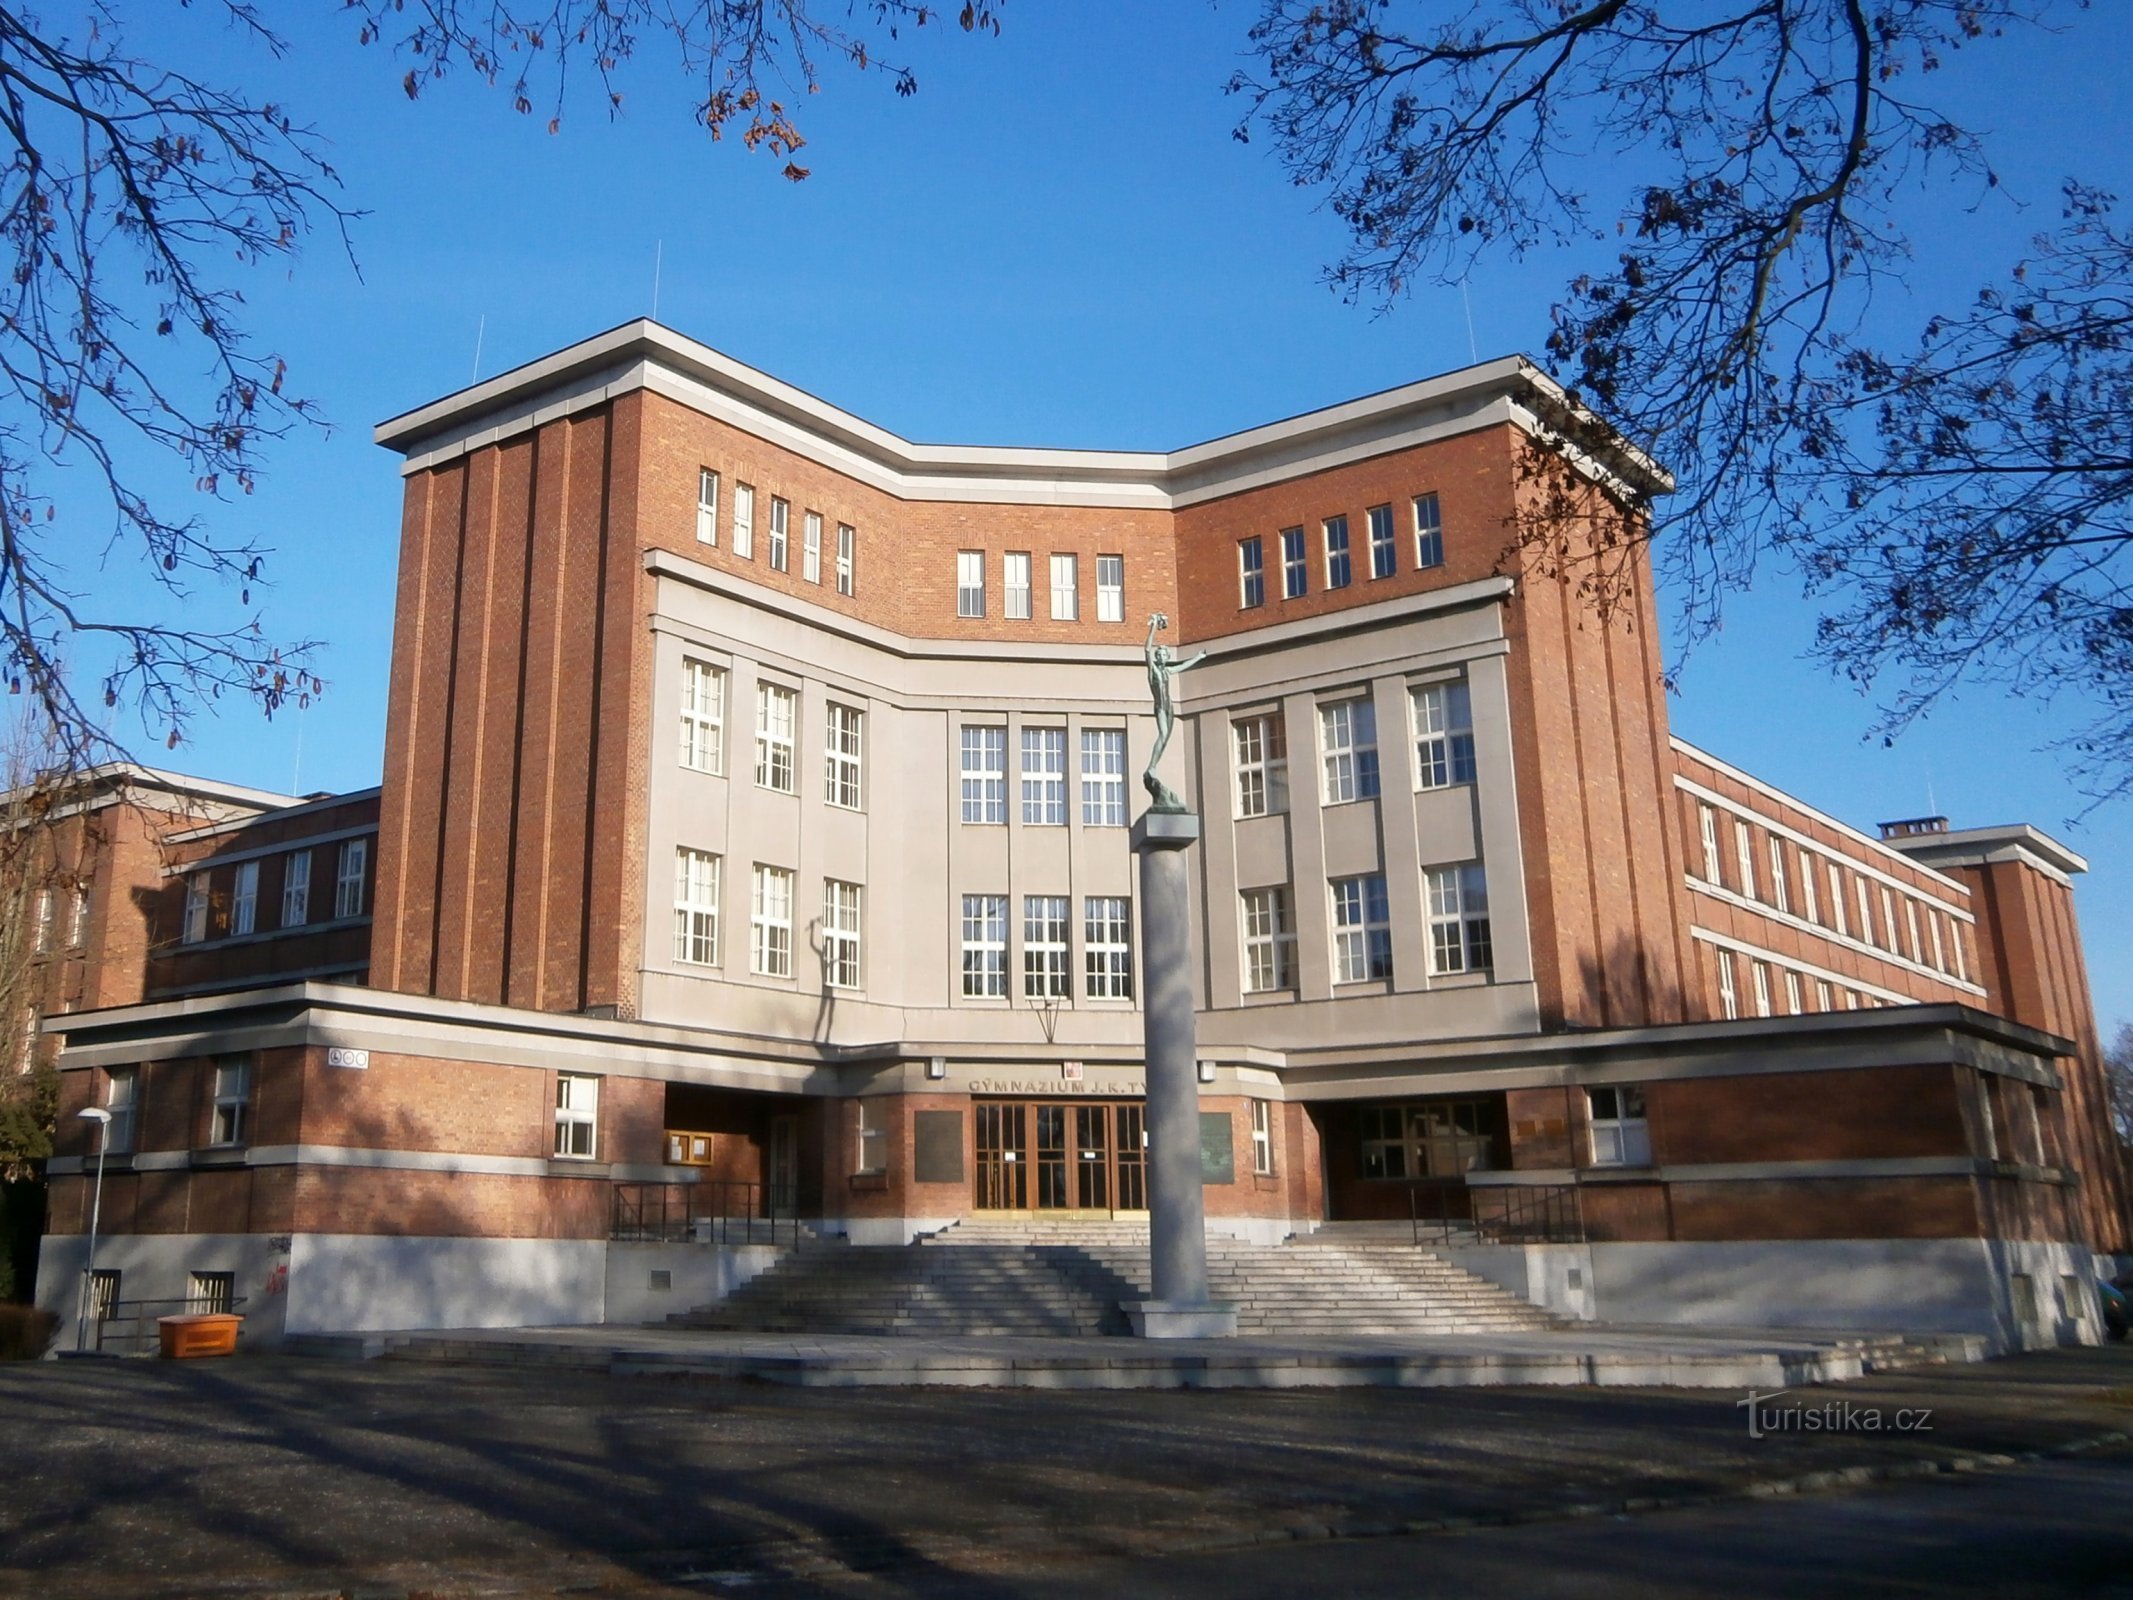 JK Tyla High School (Hradec Králové, 3.12.2016 dicembre XNUMX)